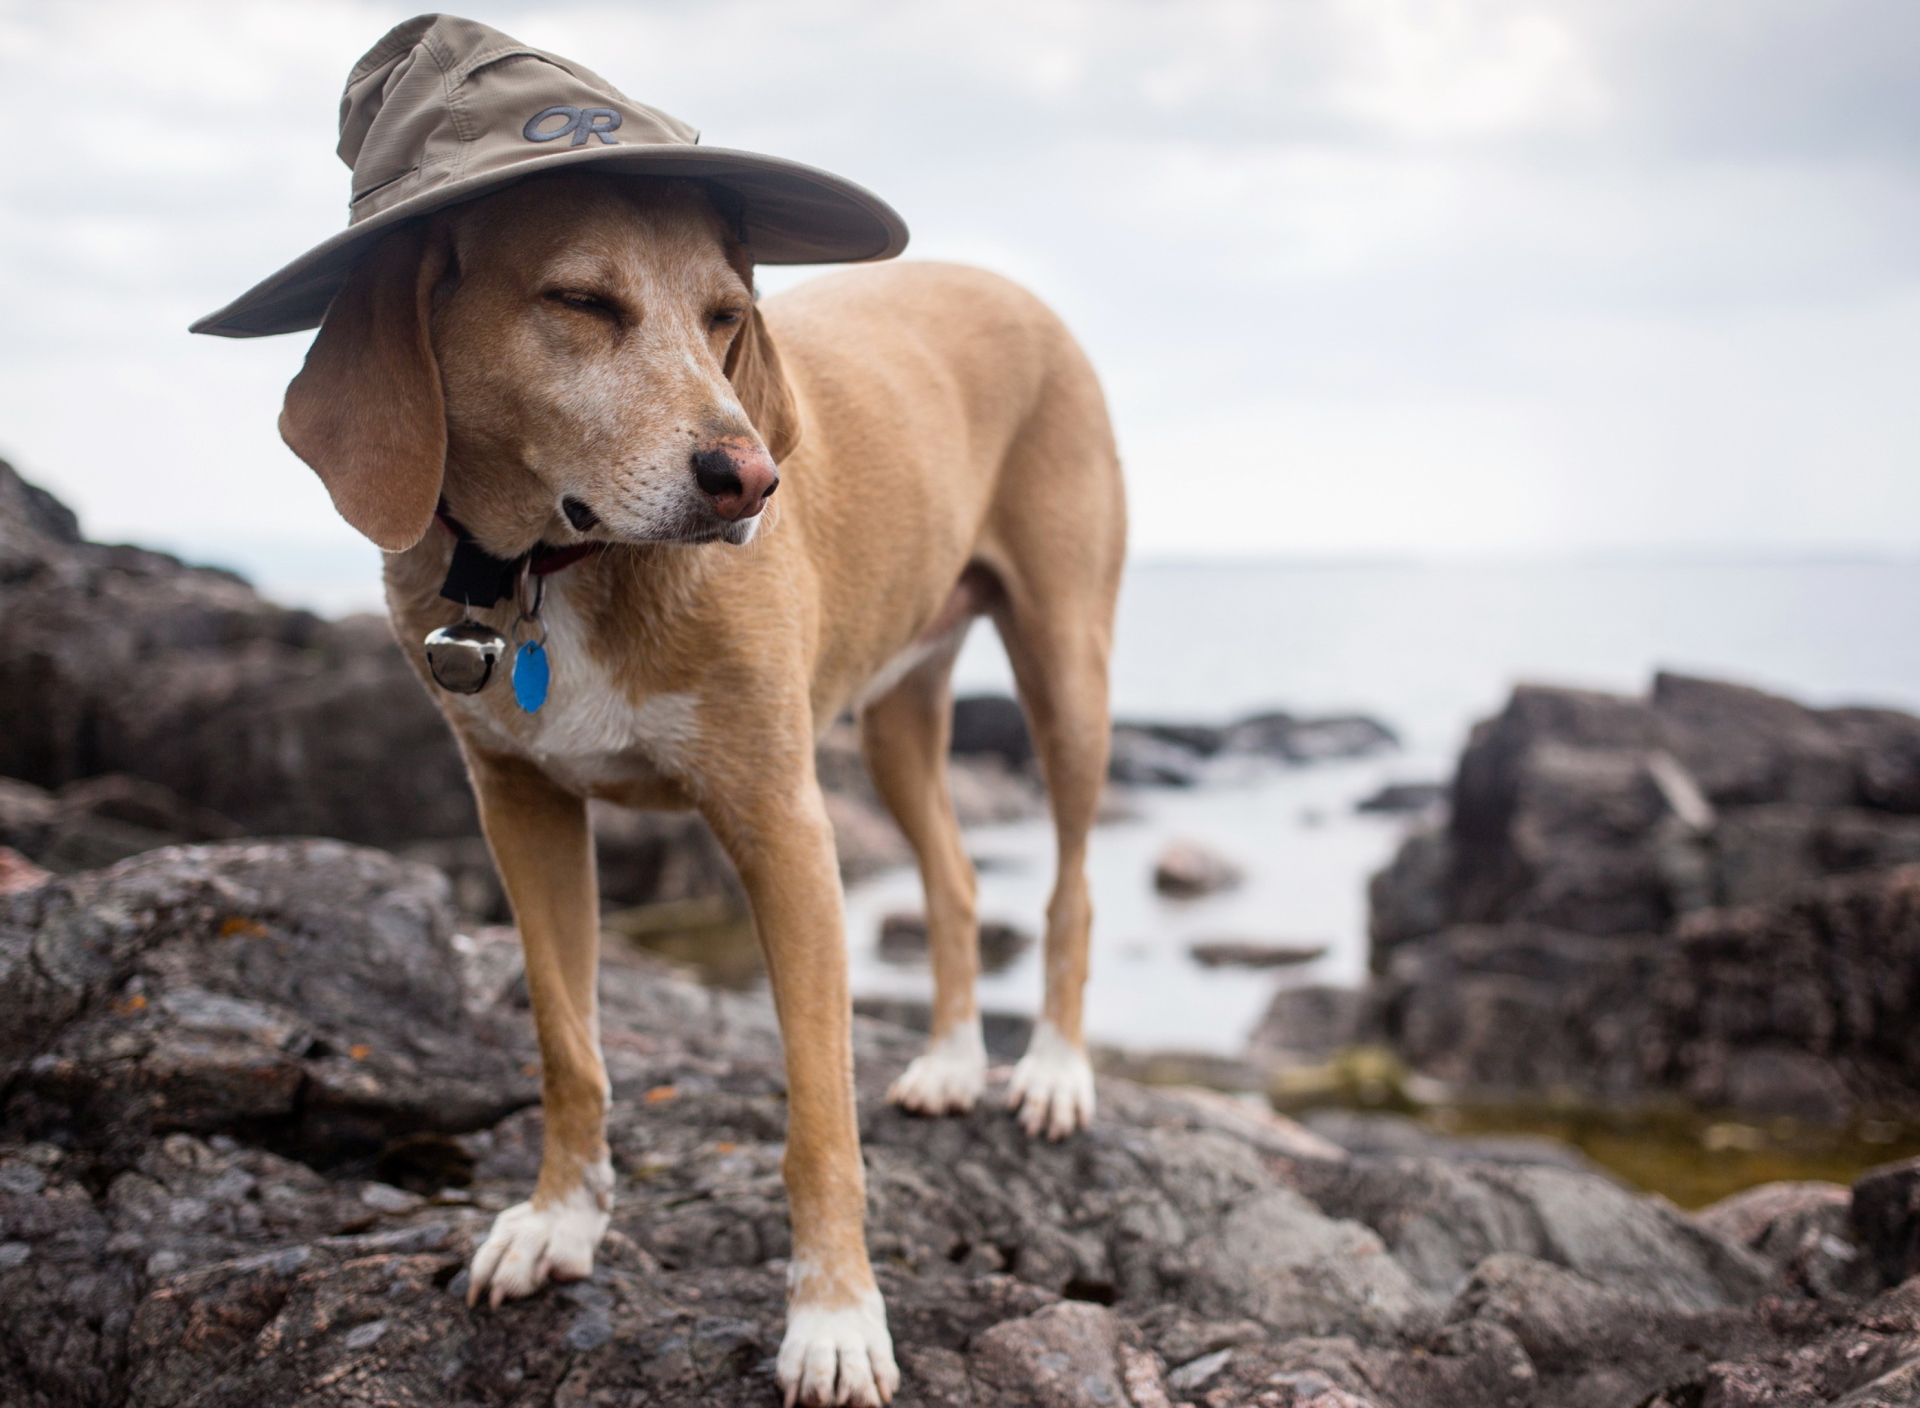 Sfondi Dog In Funny Wizard Style Hat 1920x1408